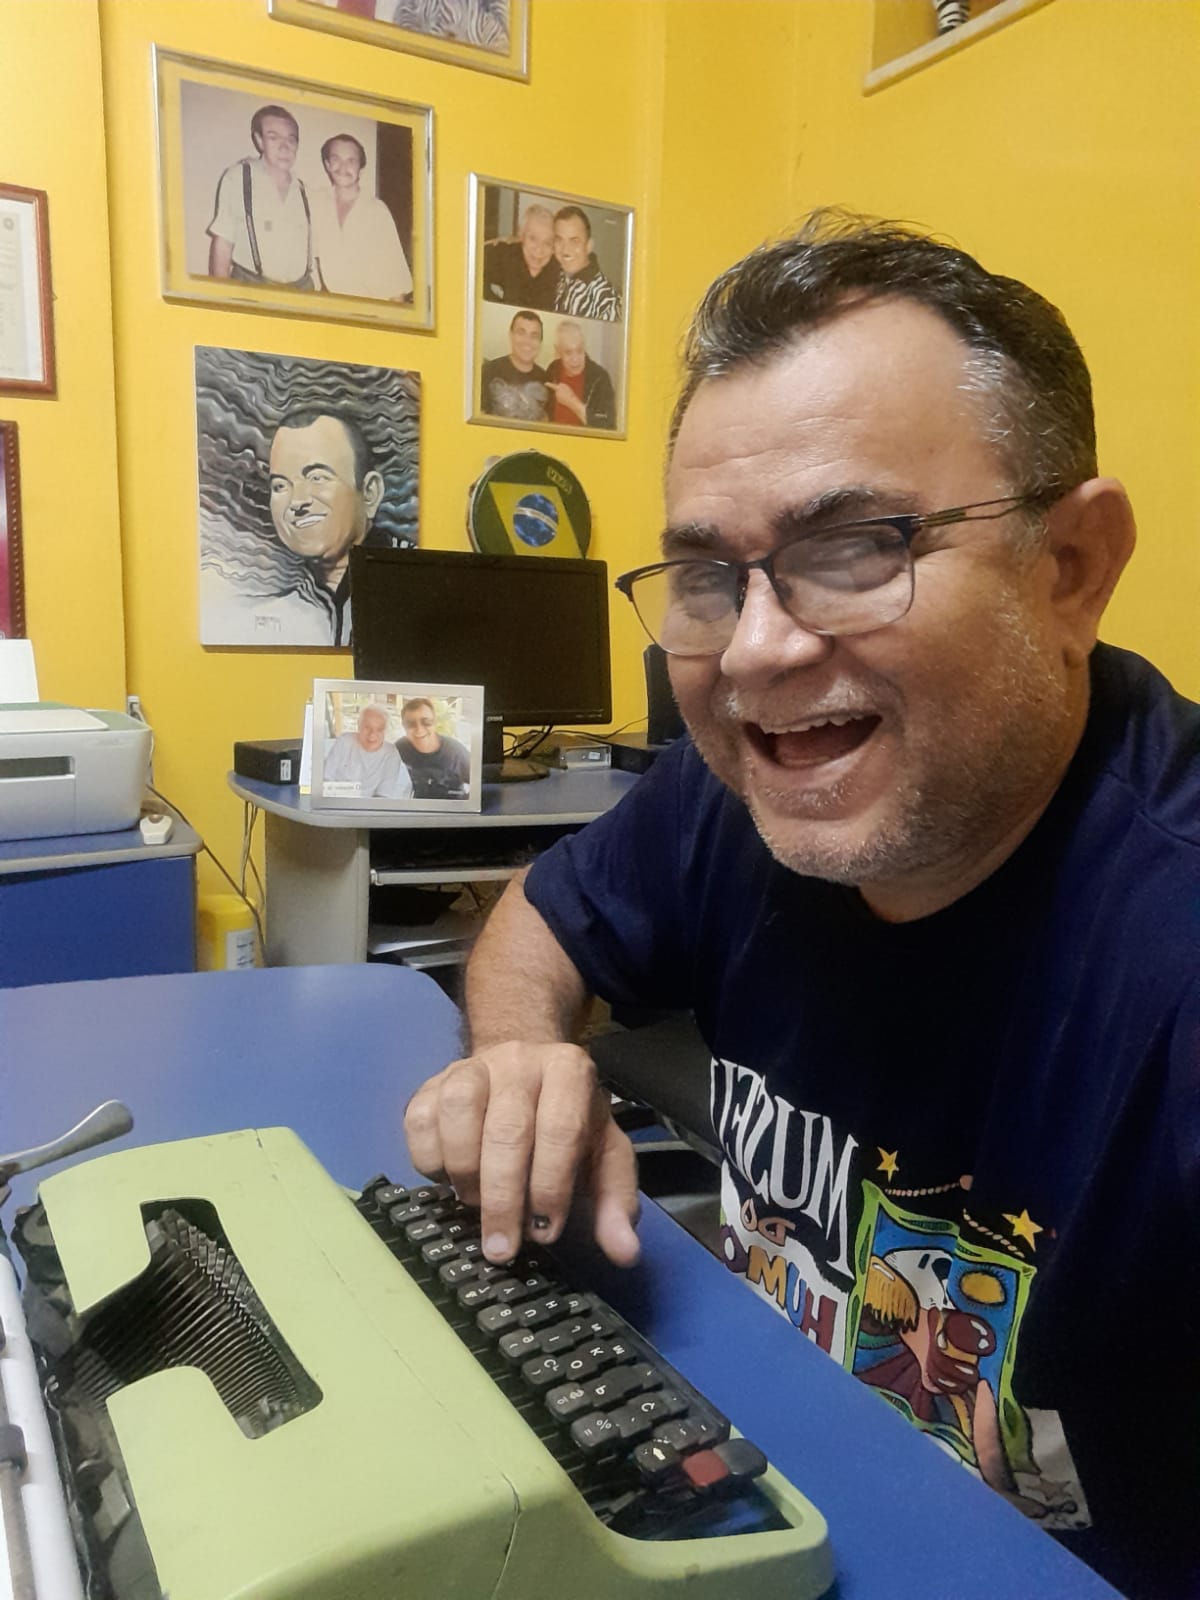 Jader Soares e sua máquina de escrever